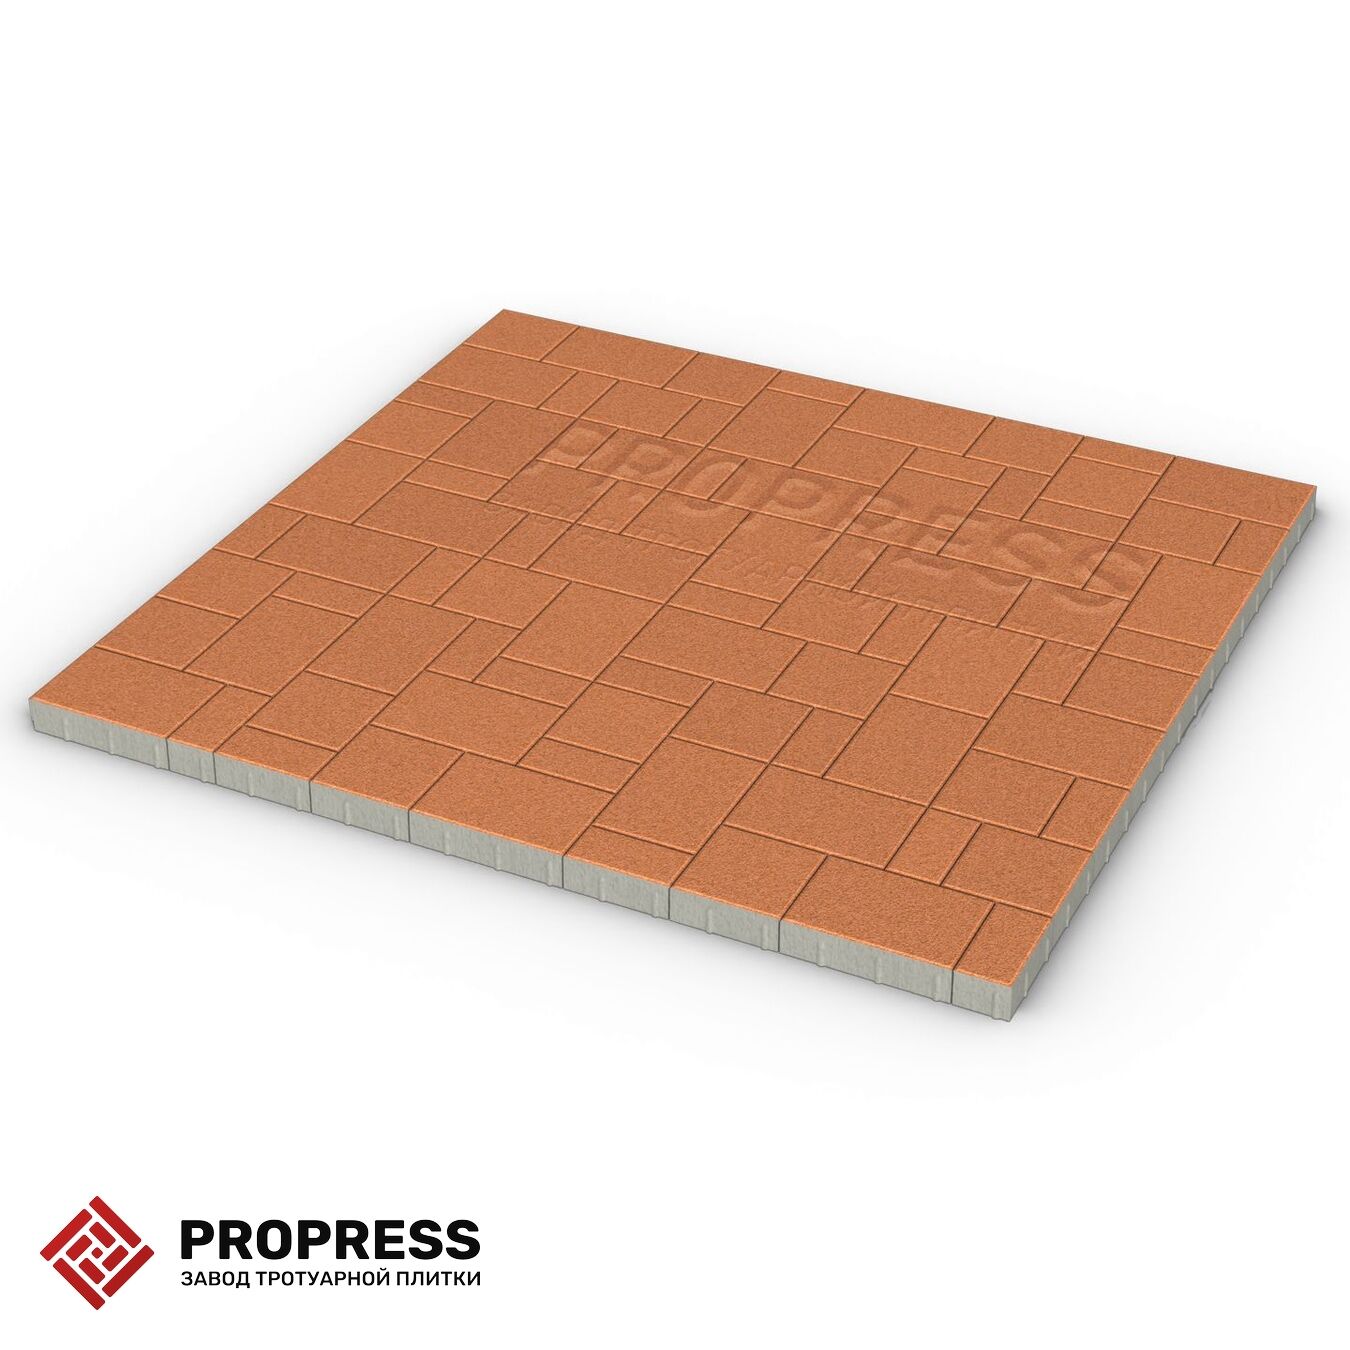 Тротуарная плитка Пропресс Лэндхаус Оранжевый мрамор 60 мм